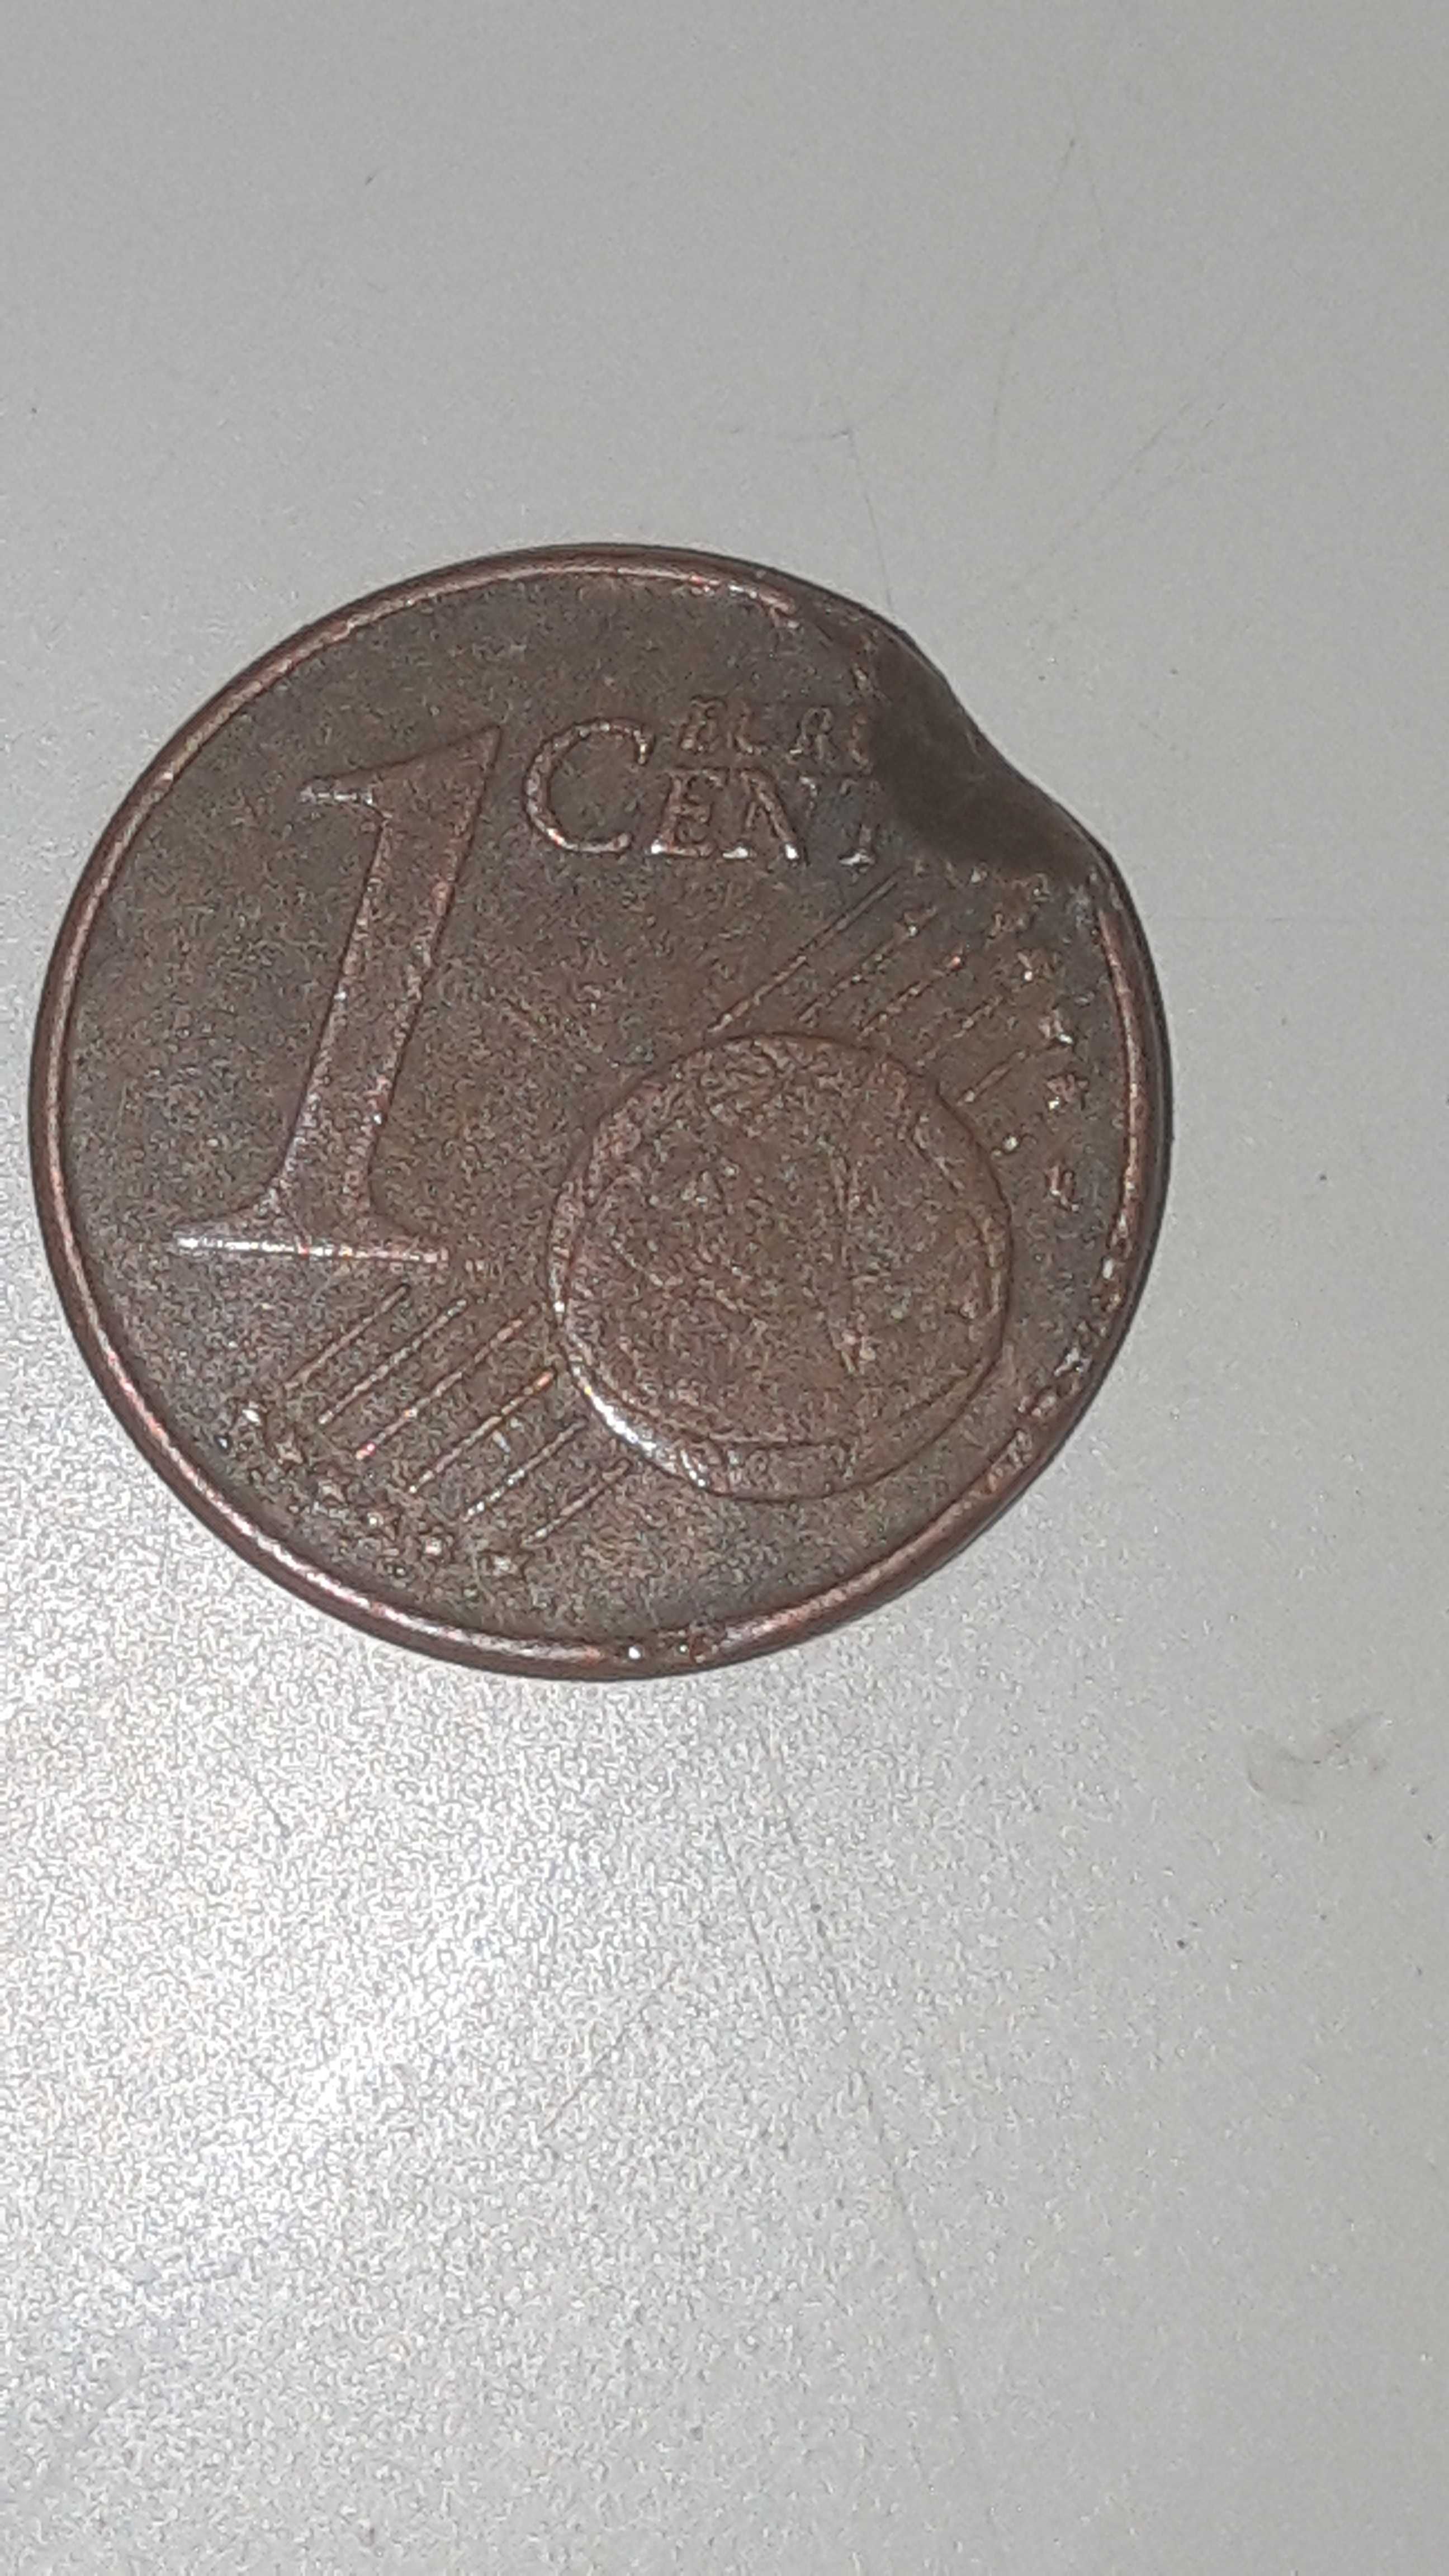 3 moedas de 1 centimo com defeito.